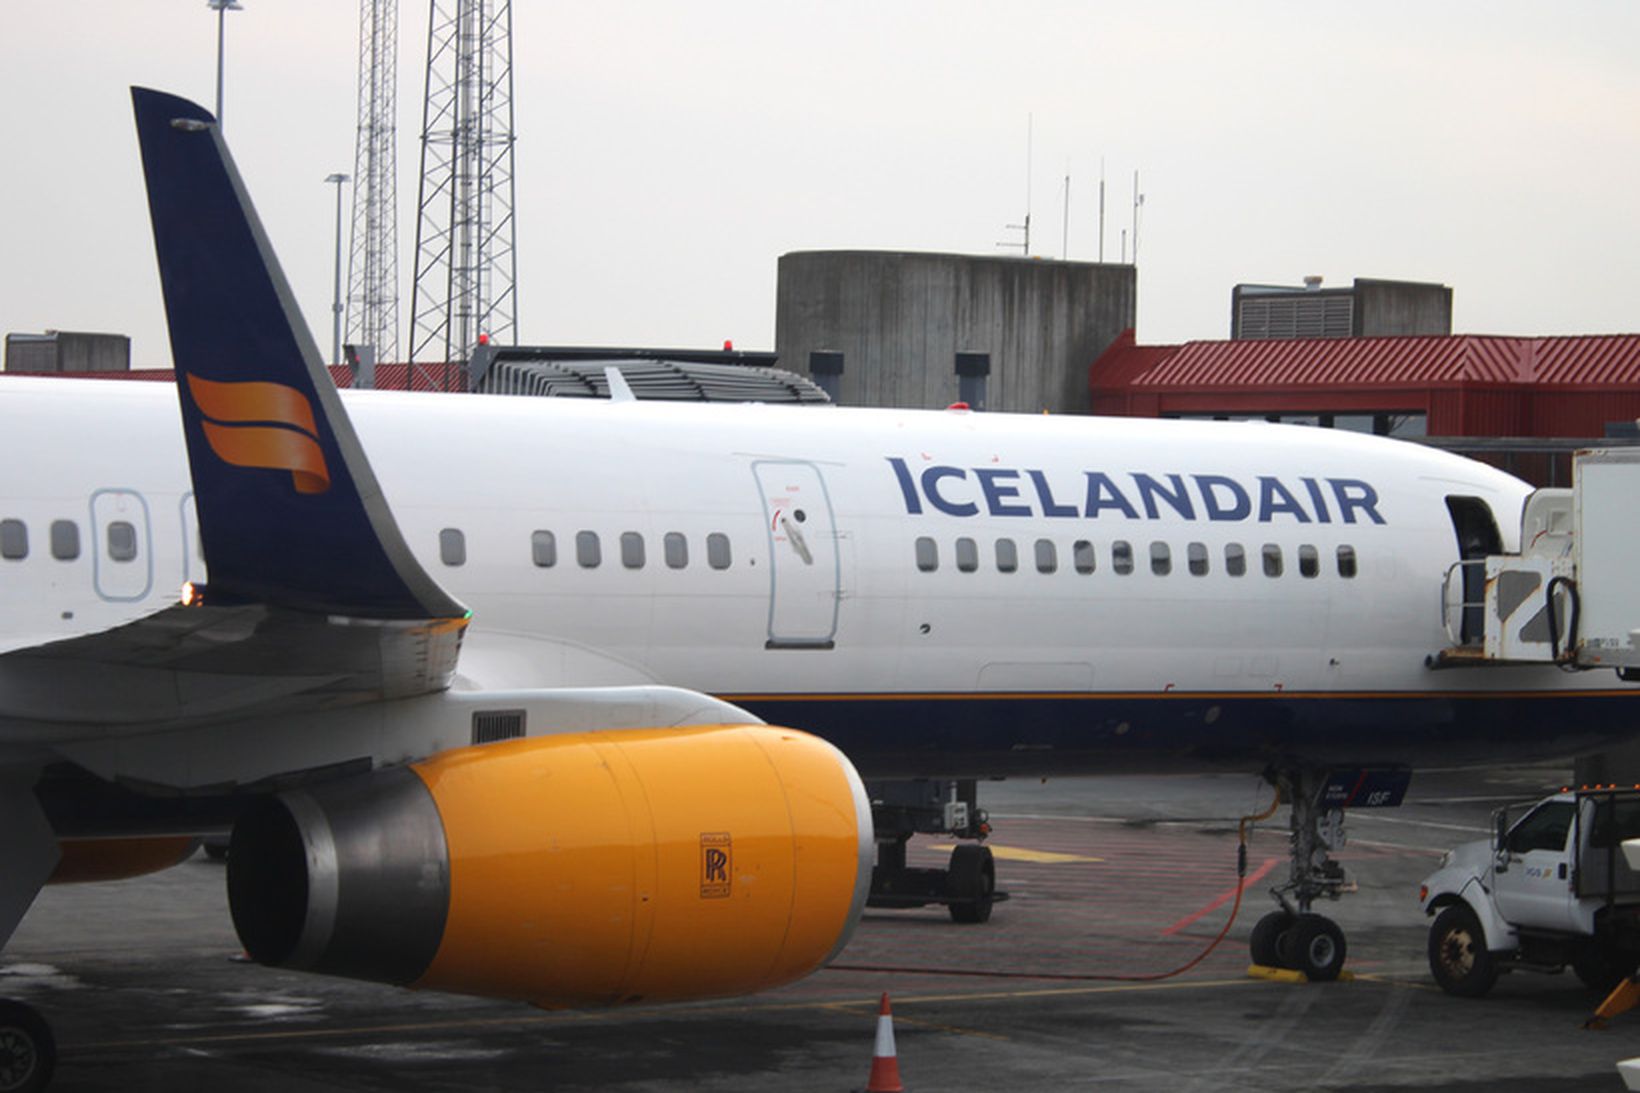 Flugvél Icelandair. Myndin er úr safni.